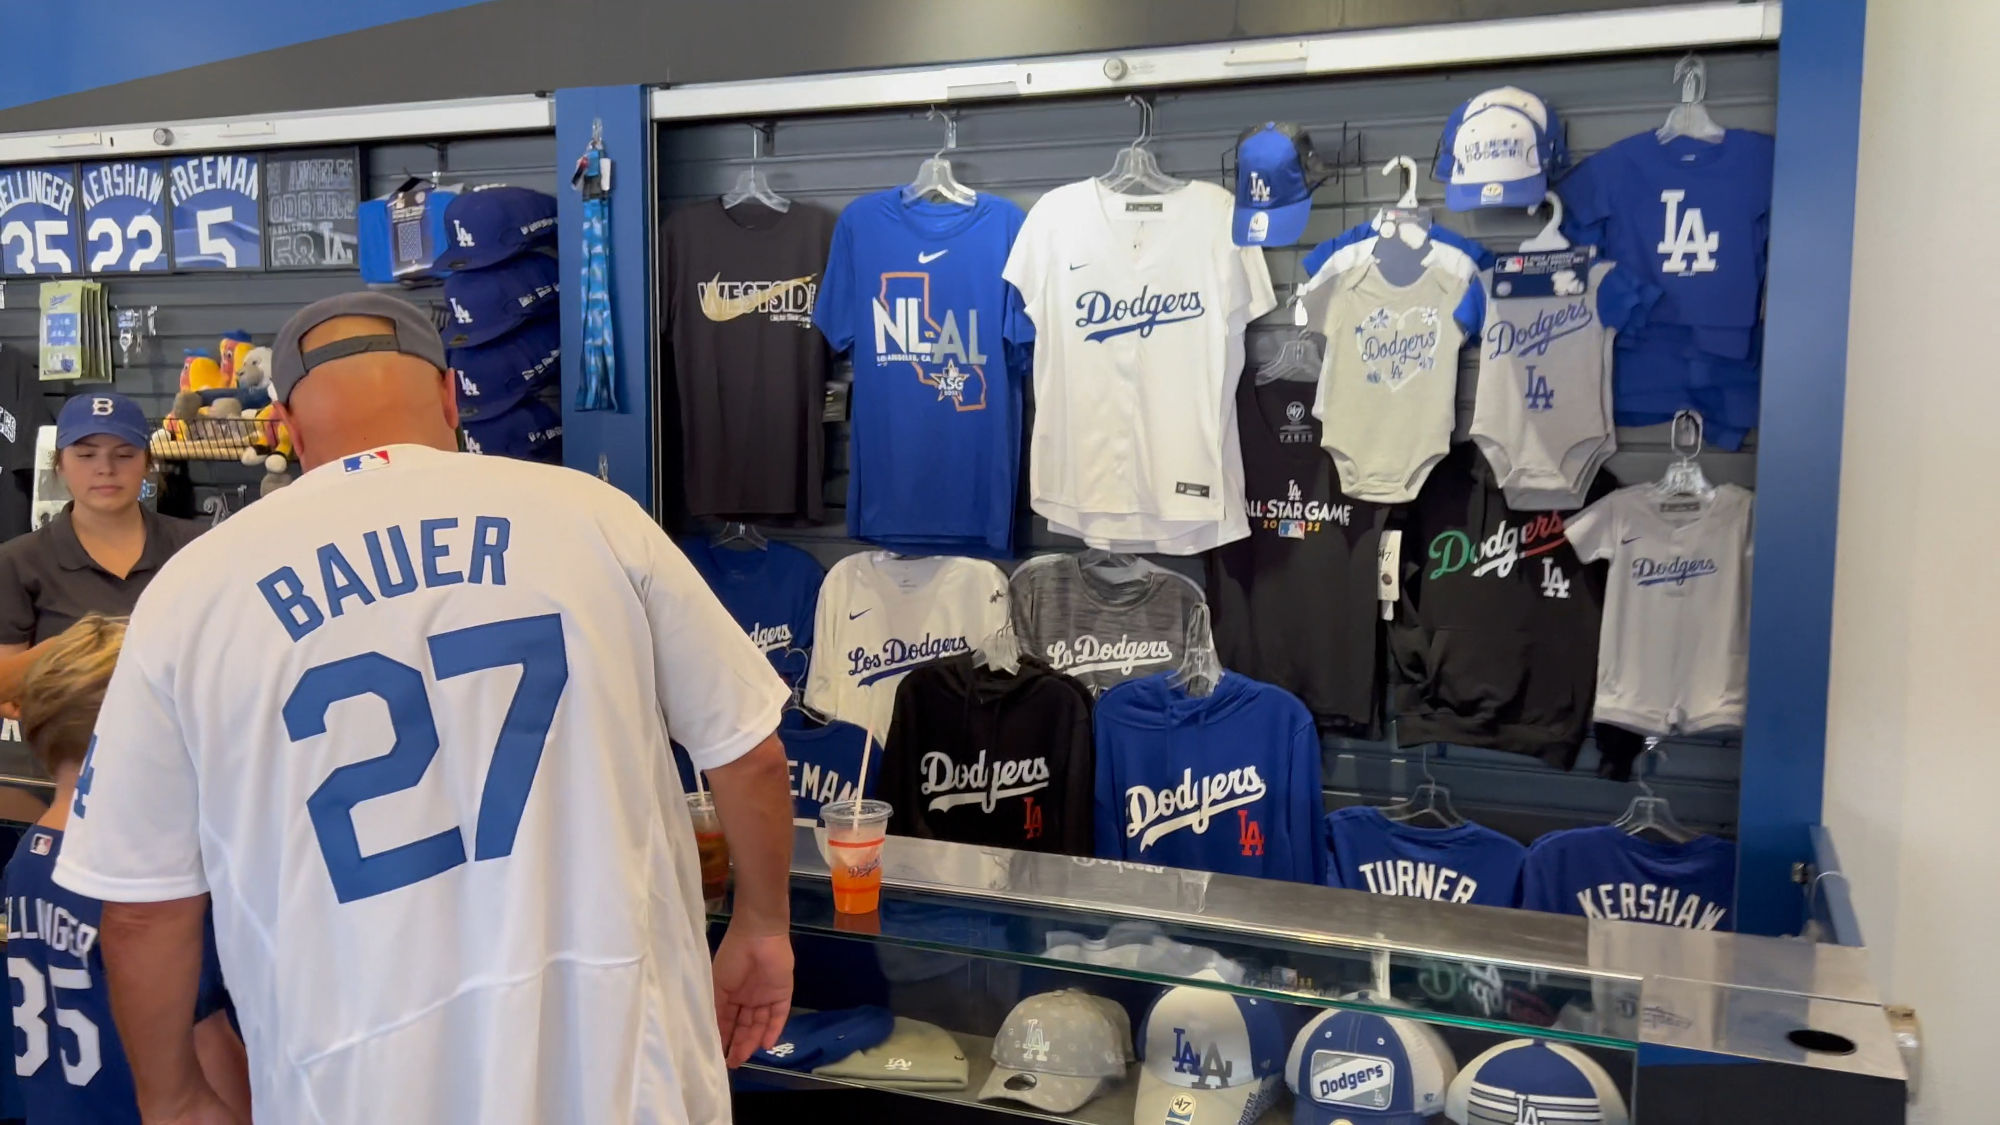 Dodger Stadium Merchandise Booth Bauer